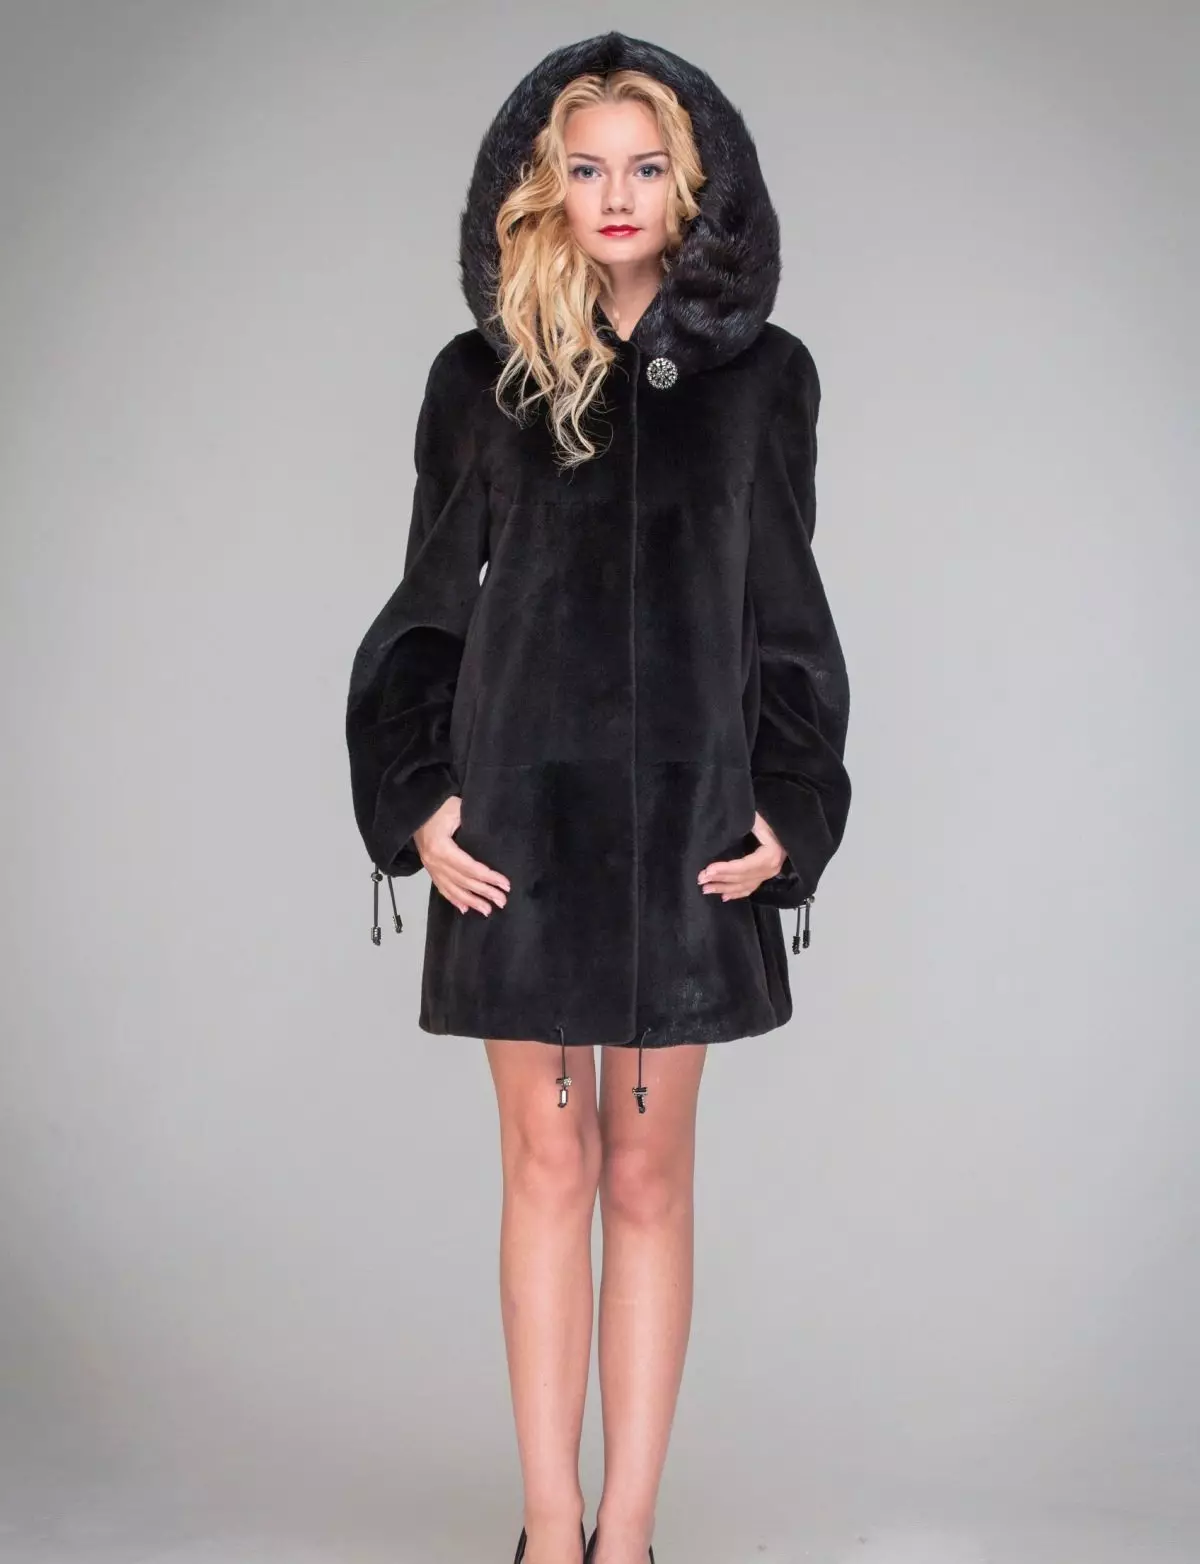 Sweething Fur Coat (80 사진) : 대형 모델, Nutria에서 모피 코트를 선택하는 방법, 리뷰 699_4